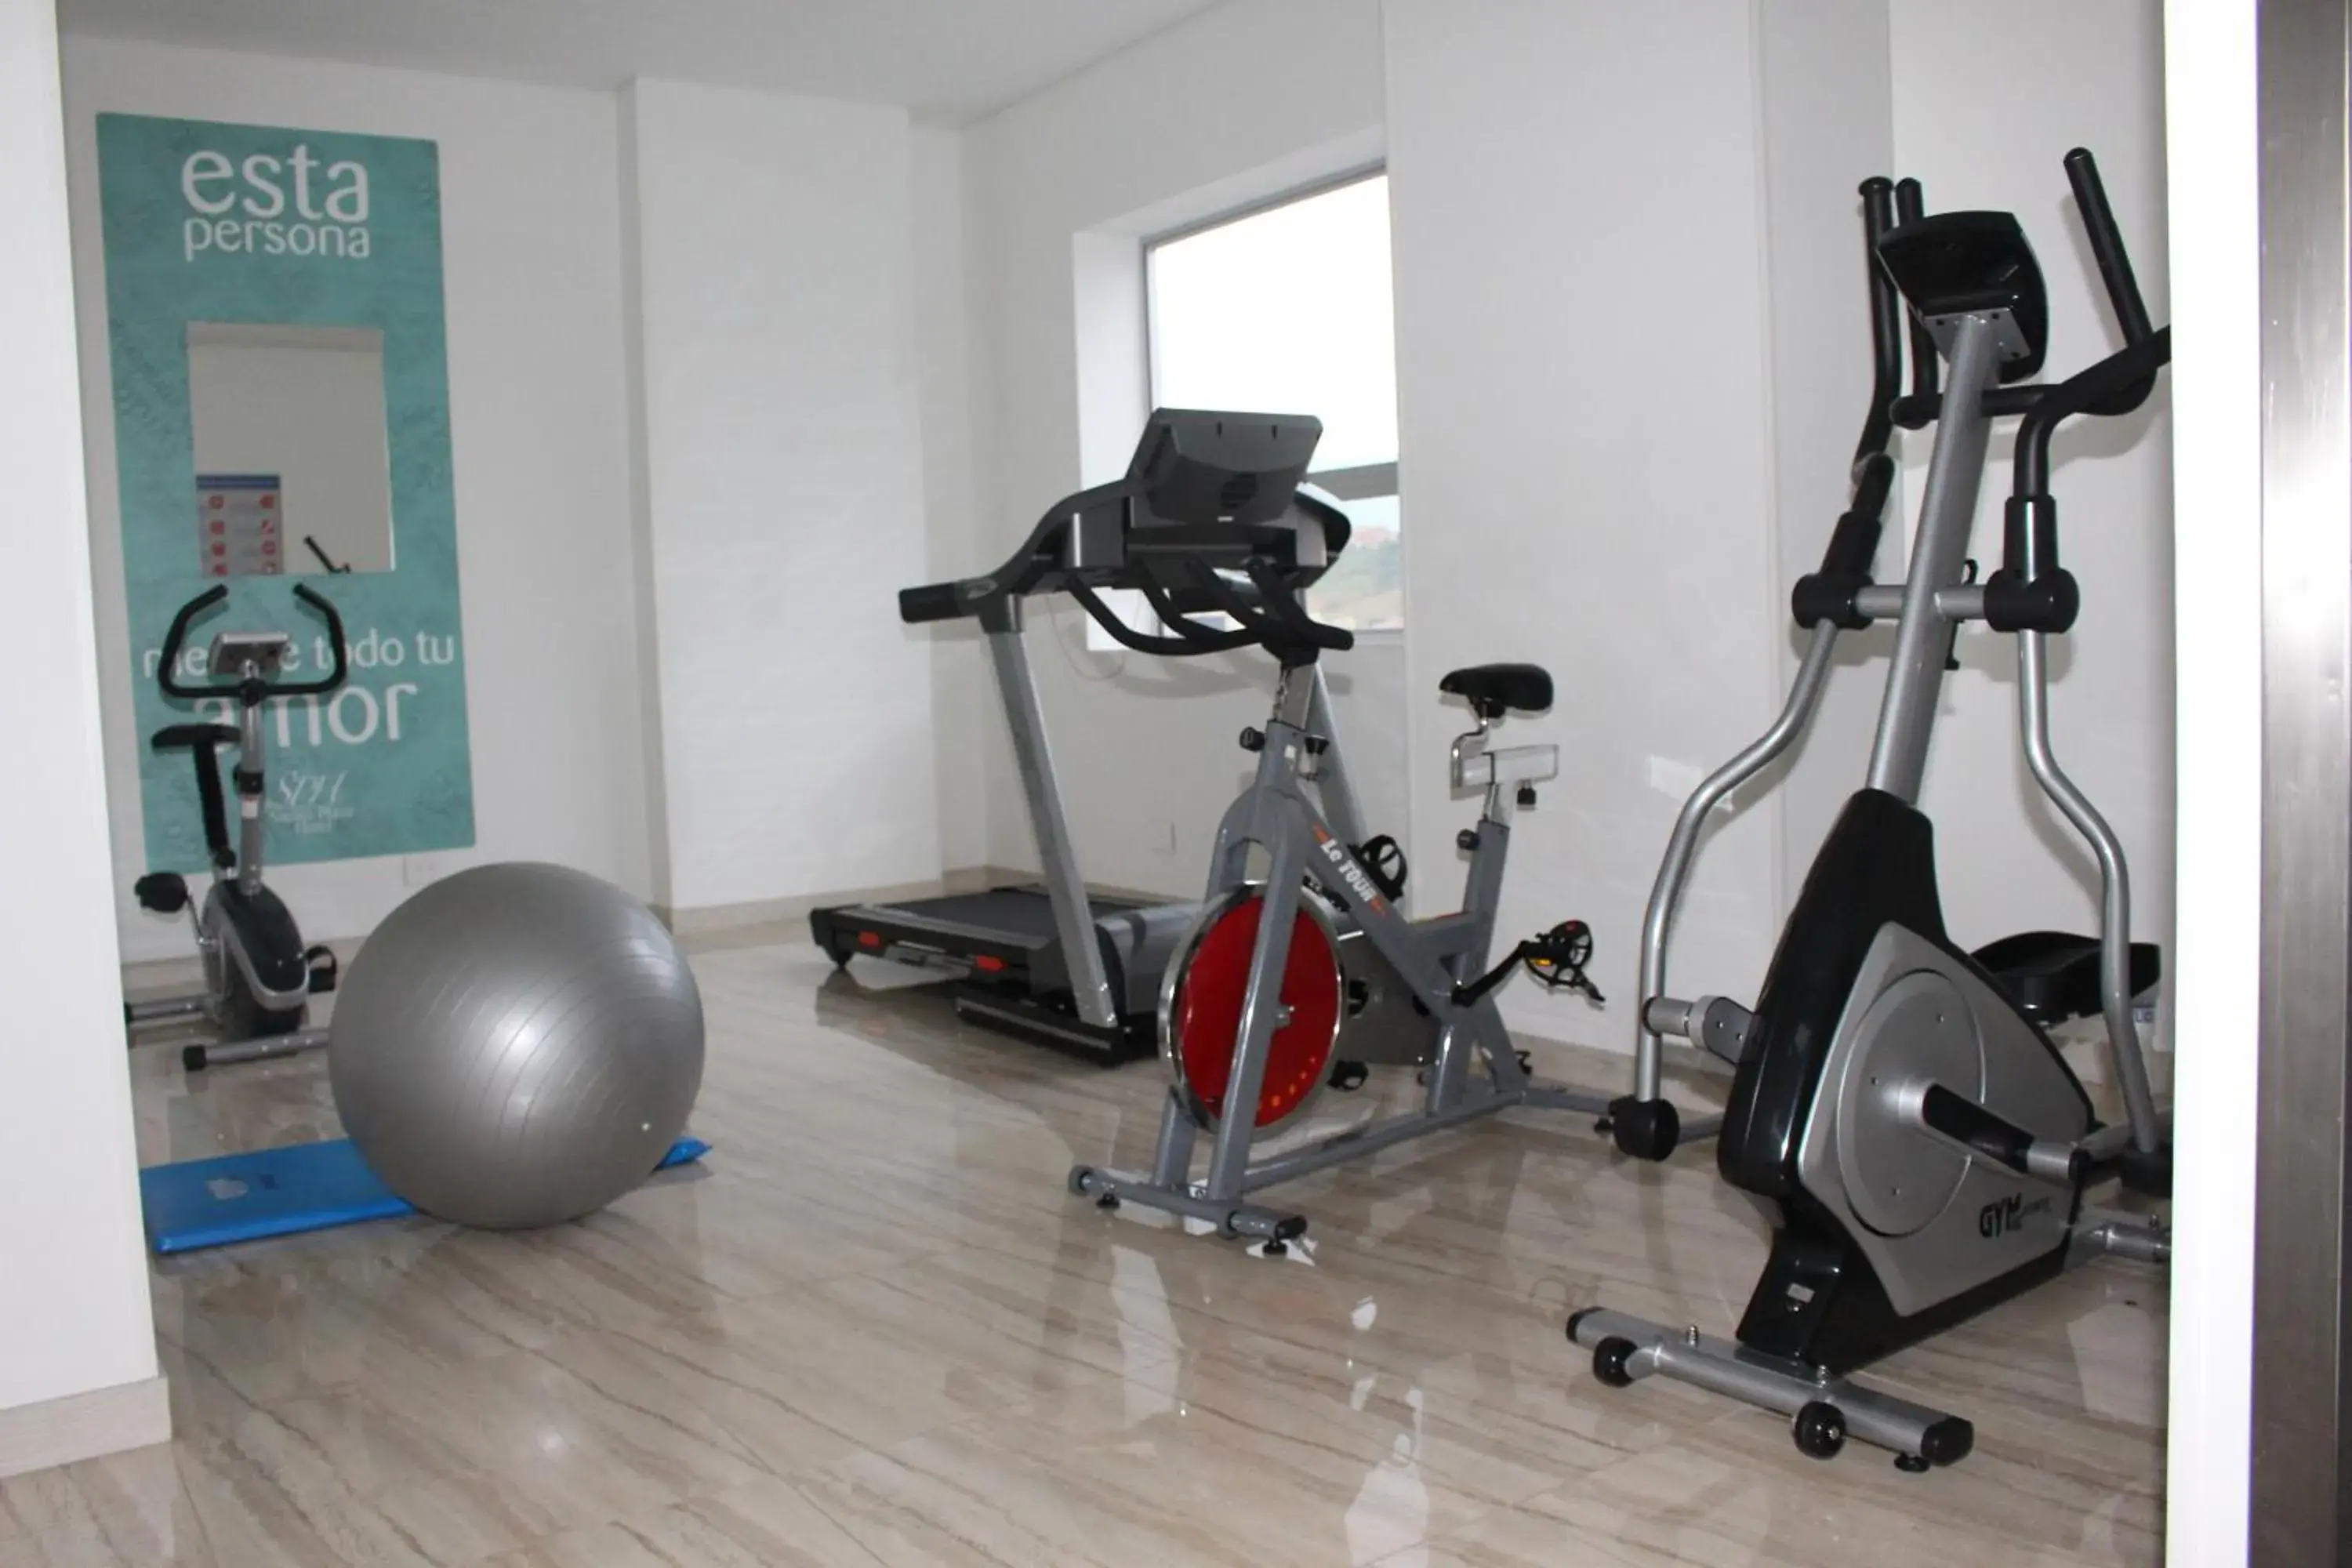 Fitness centre/facilities, Fitness Center/Facilities in Sixtina Plaza Hotel